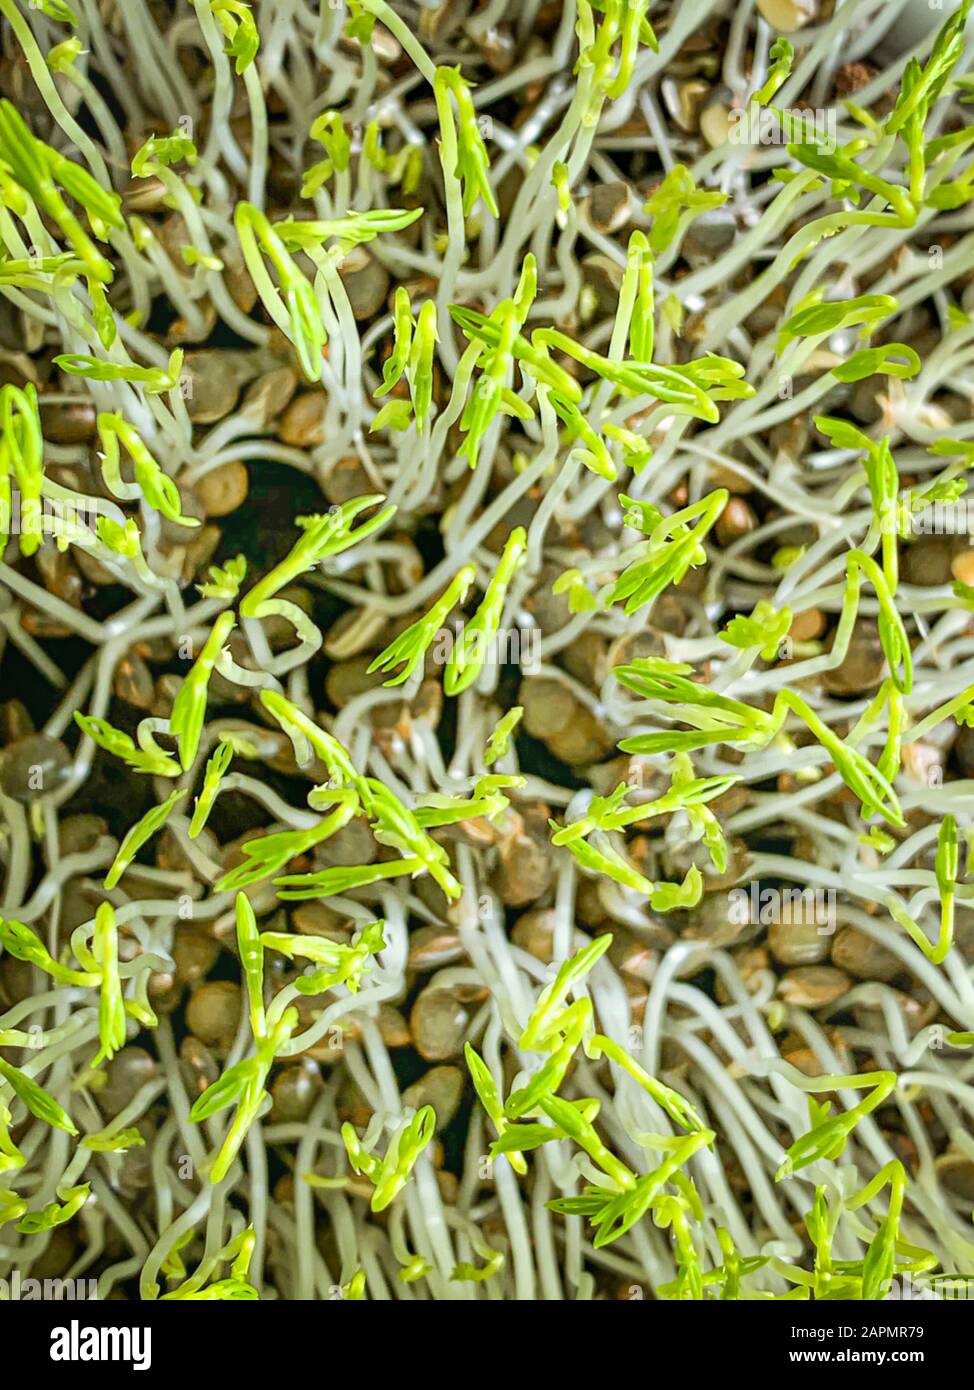 Enfilés de lentilles vertes d'en haut, photo macro-alimentaire. Épissonner les lentilles vertes françaises, également appelées lentilles du Puy. Plantules vertes et jeunes plantes. Banque D'Images